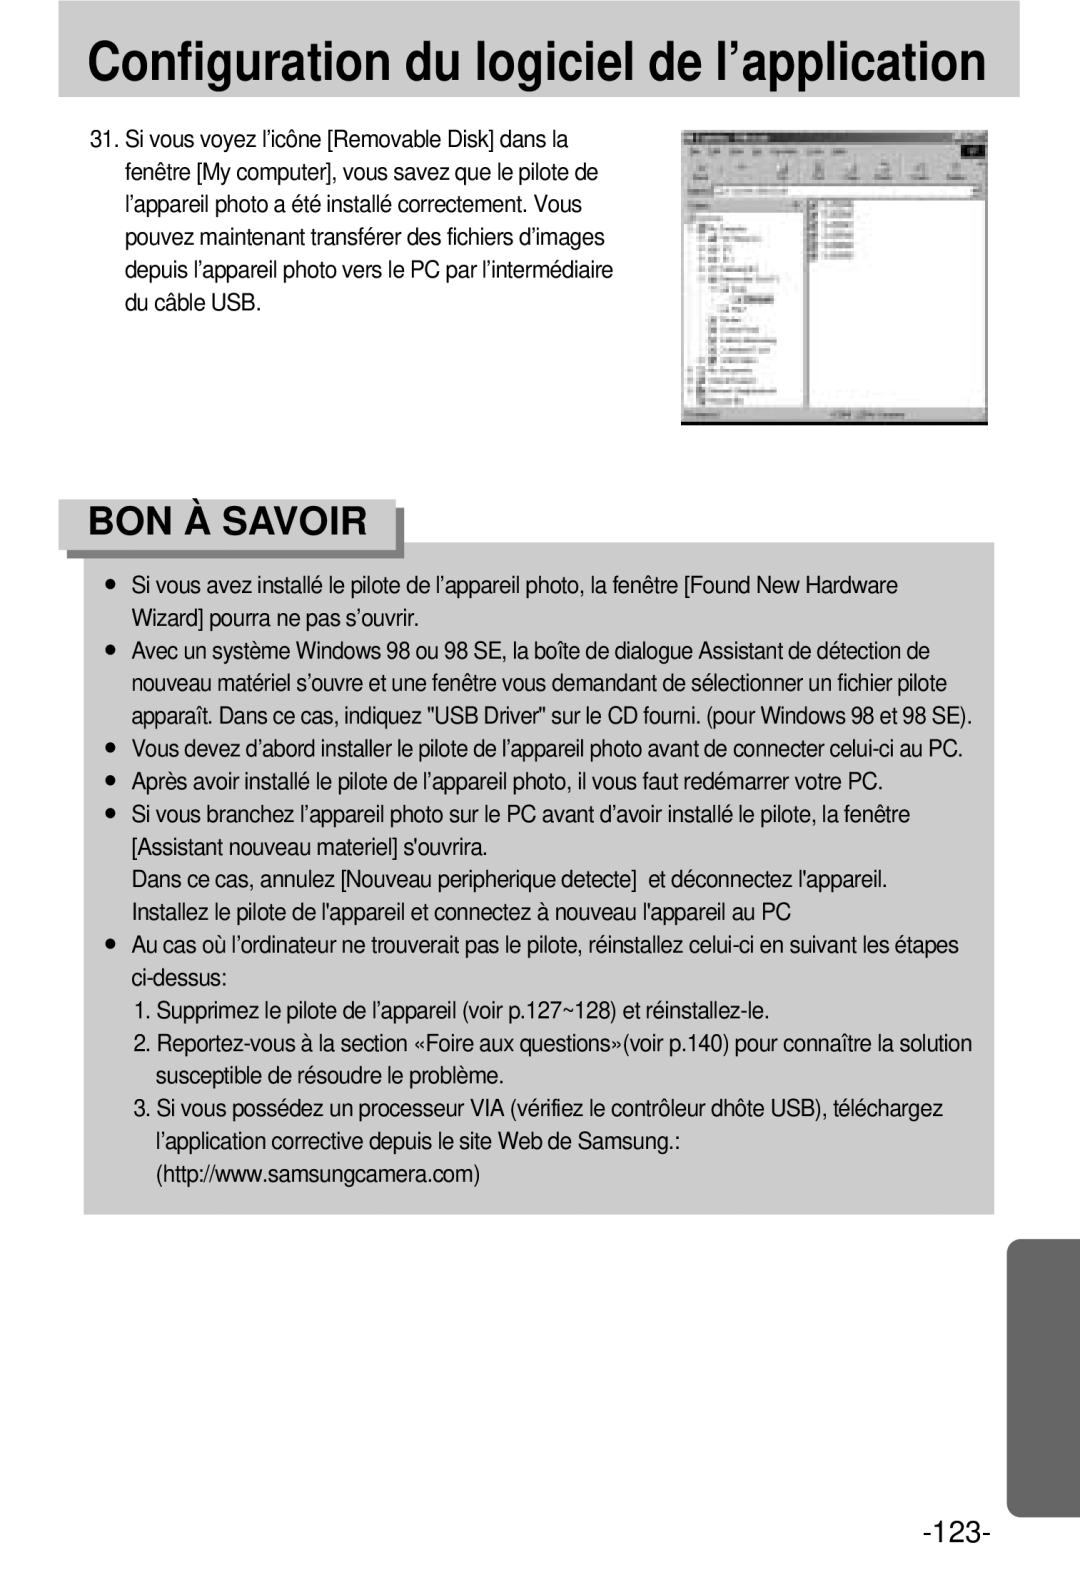 Samsung EC-V800ZSBA/FR manual 123 